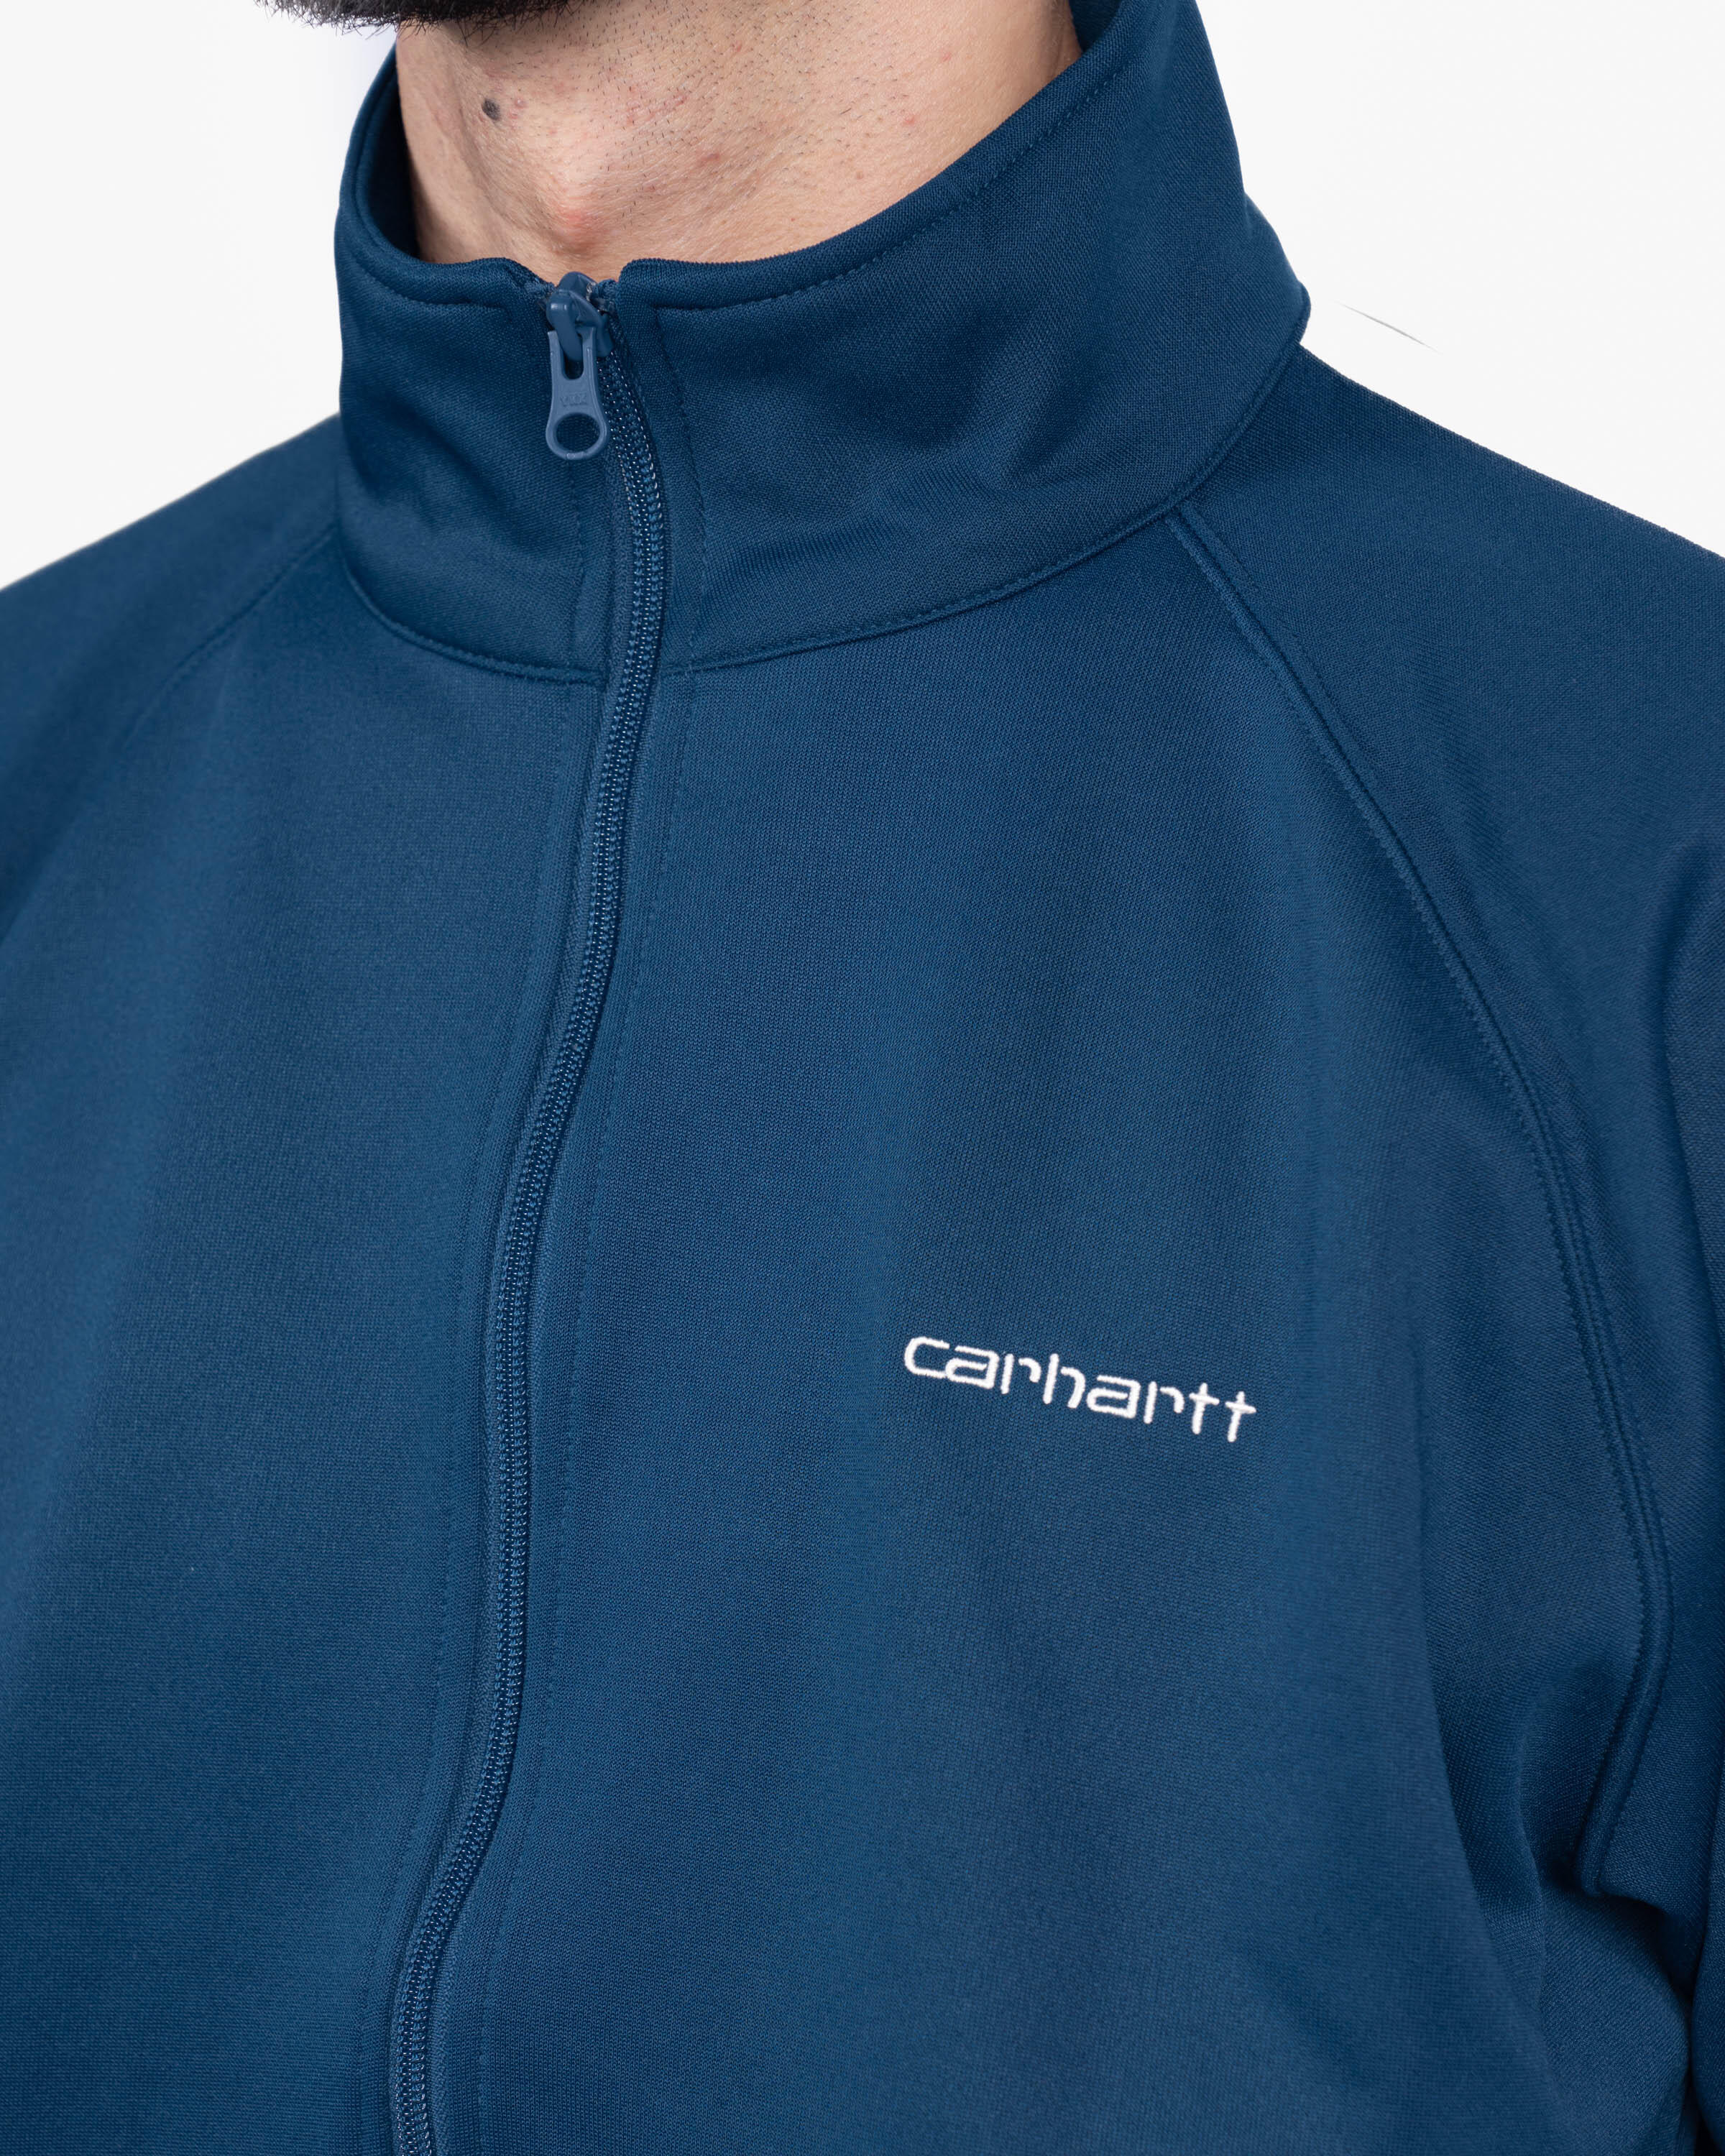 Carhartt WIP Benchill Jacket